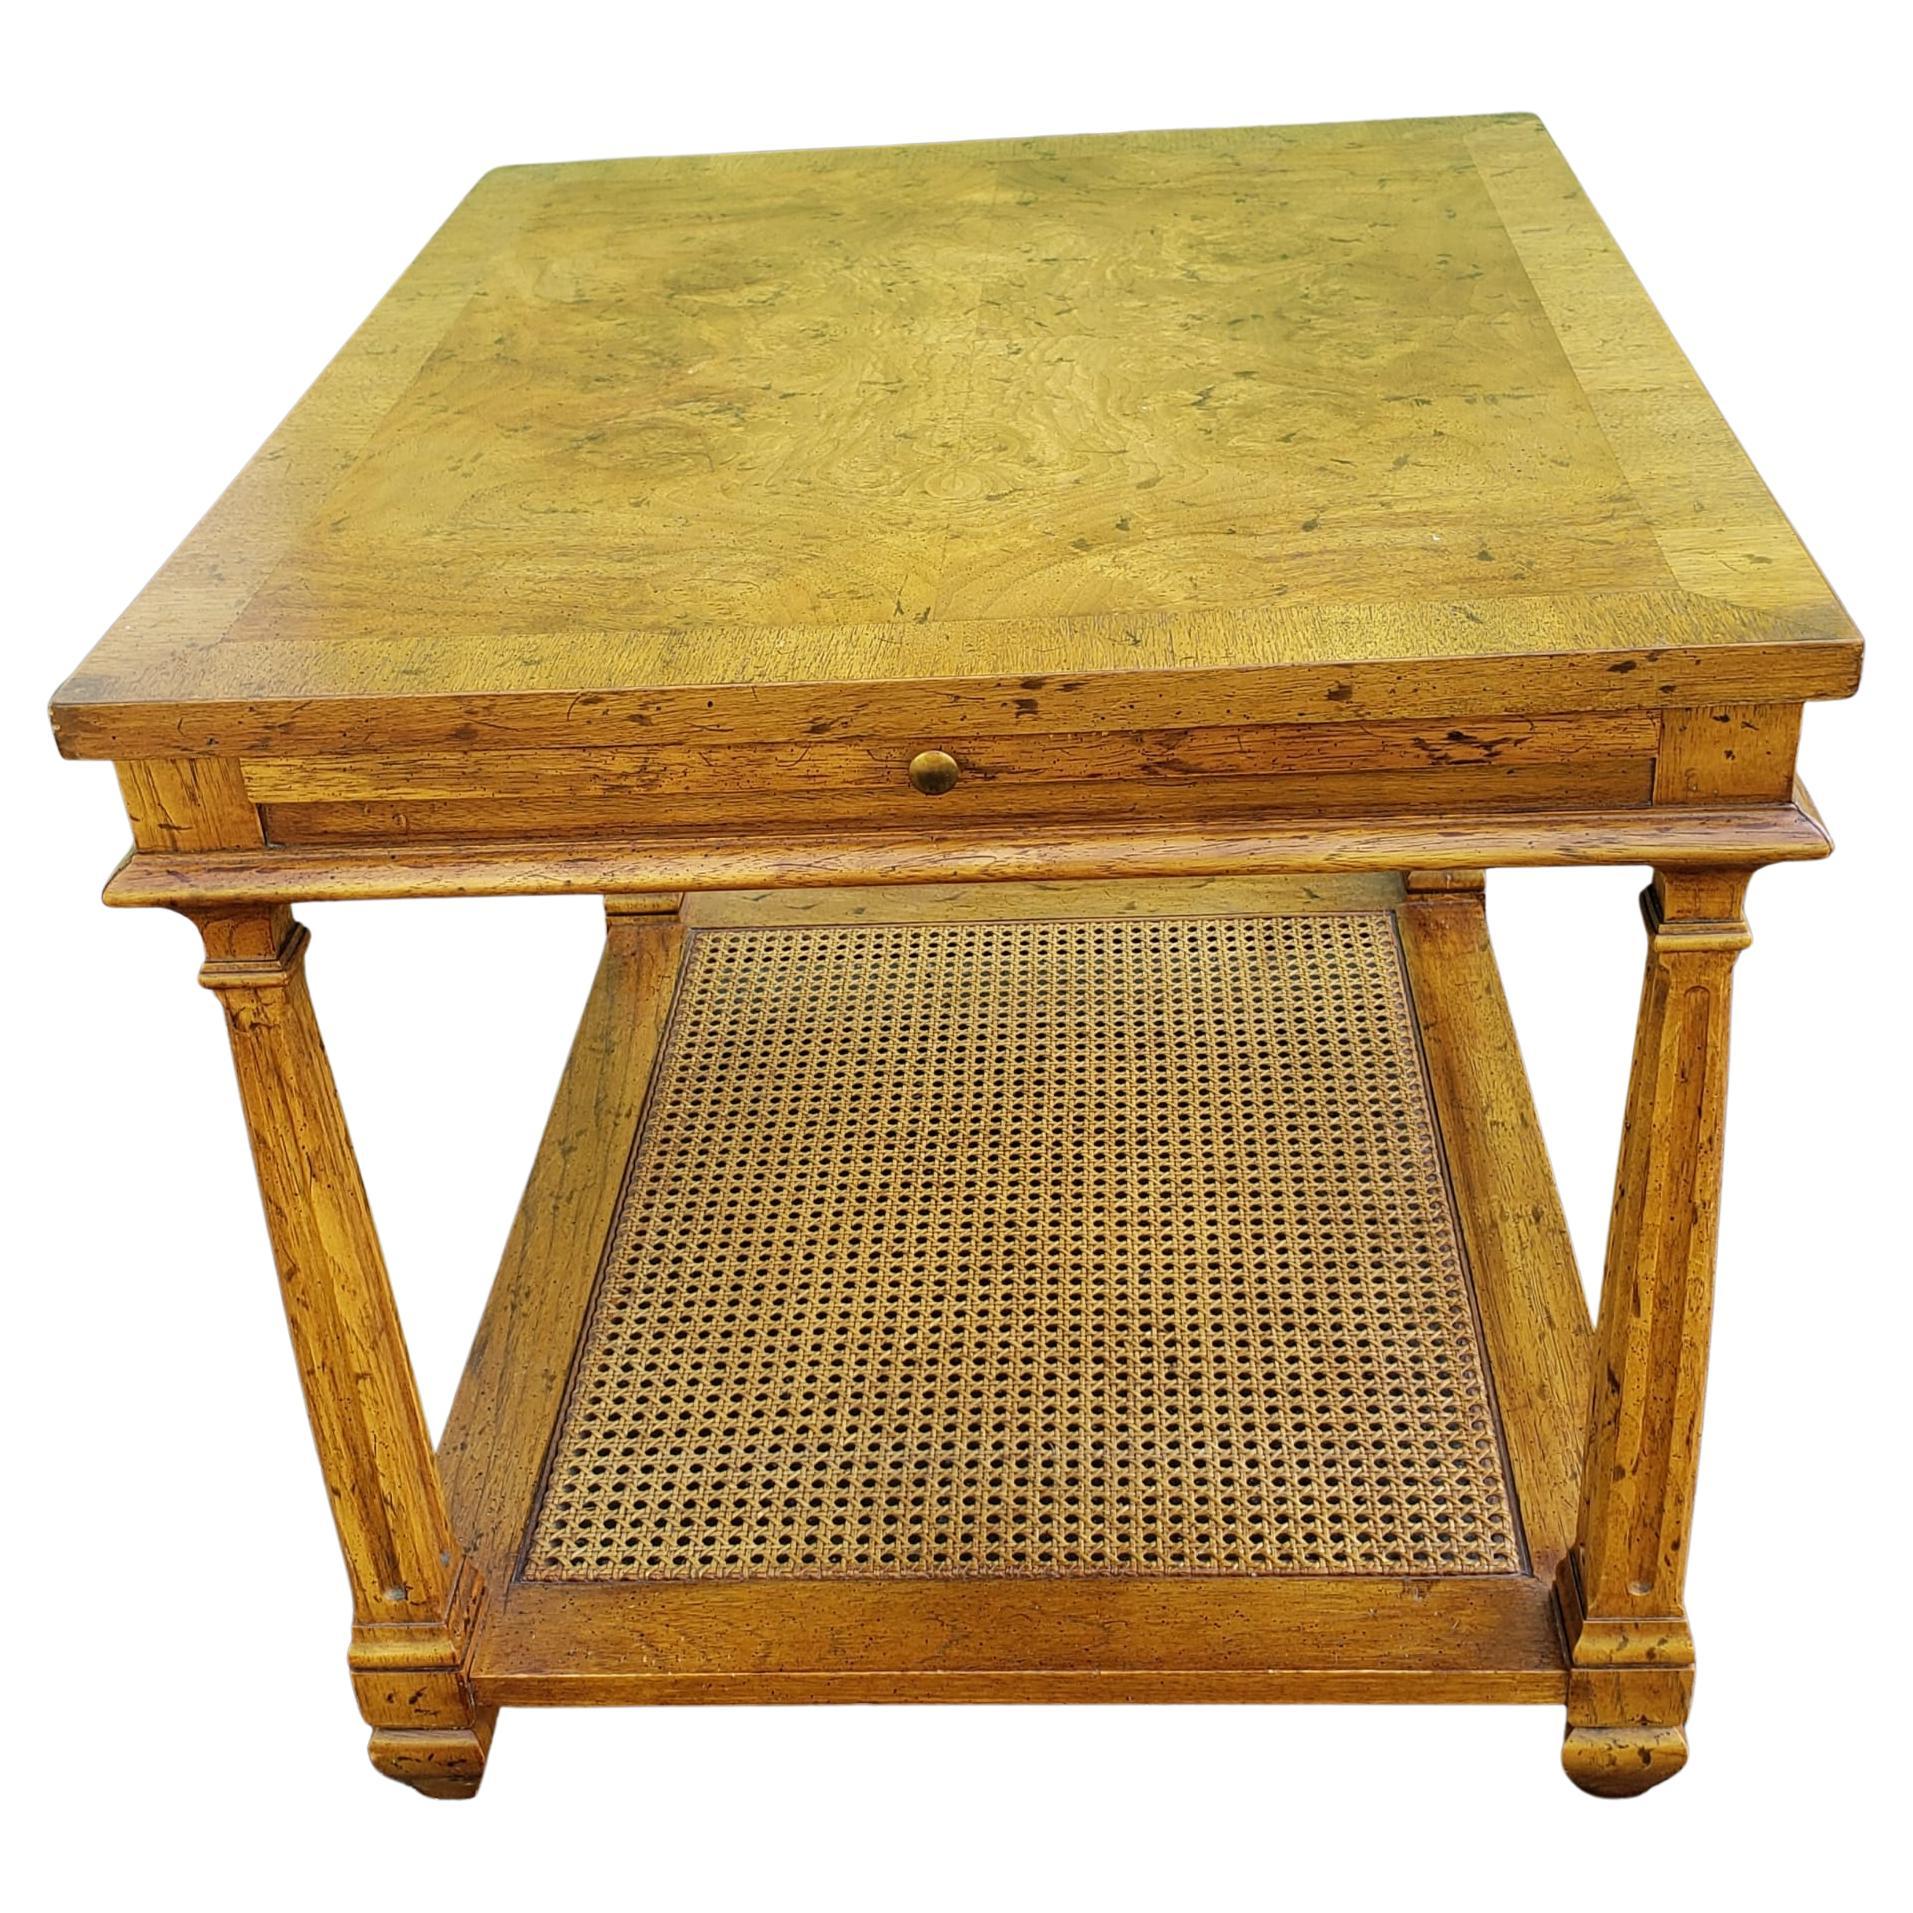 Table d'appoint à deux niveaux en bois fruitier ronce de Heritage Furniture American, avec plateau coulissant et plateau inférieur cannelé.
Excellent état vintage. Mesure 22